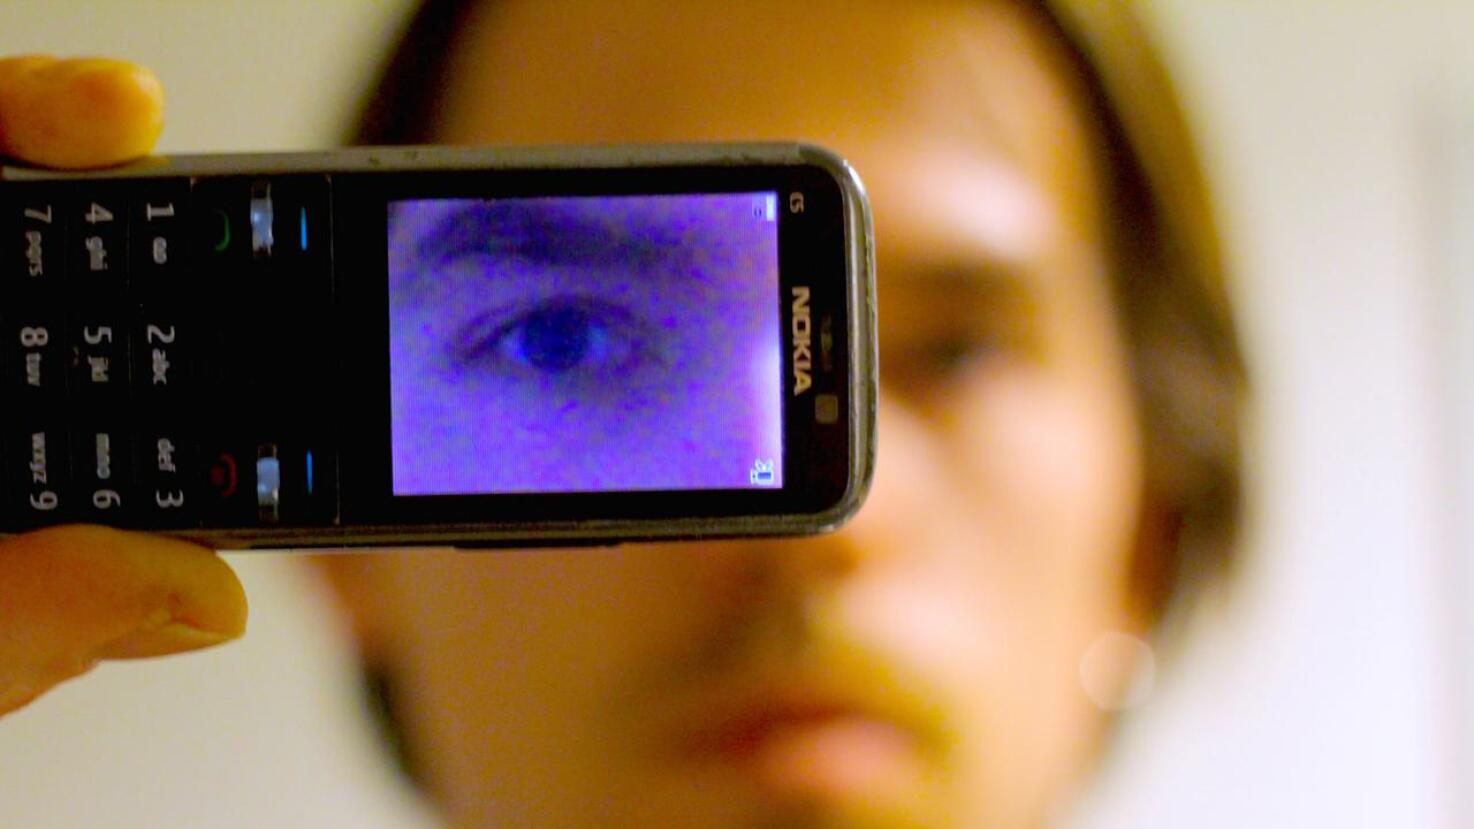 "Kukaan ei katso sinua silmiin" kuvattiin Nokian C5-puhelimen kameralla. 